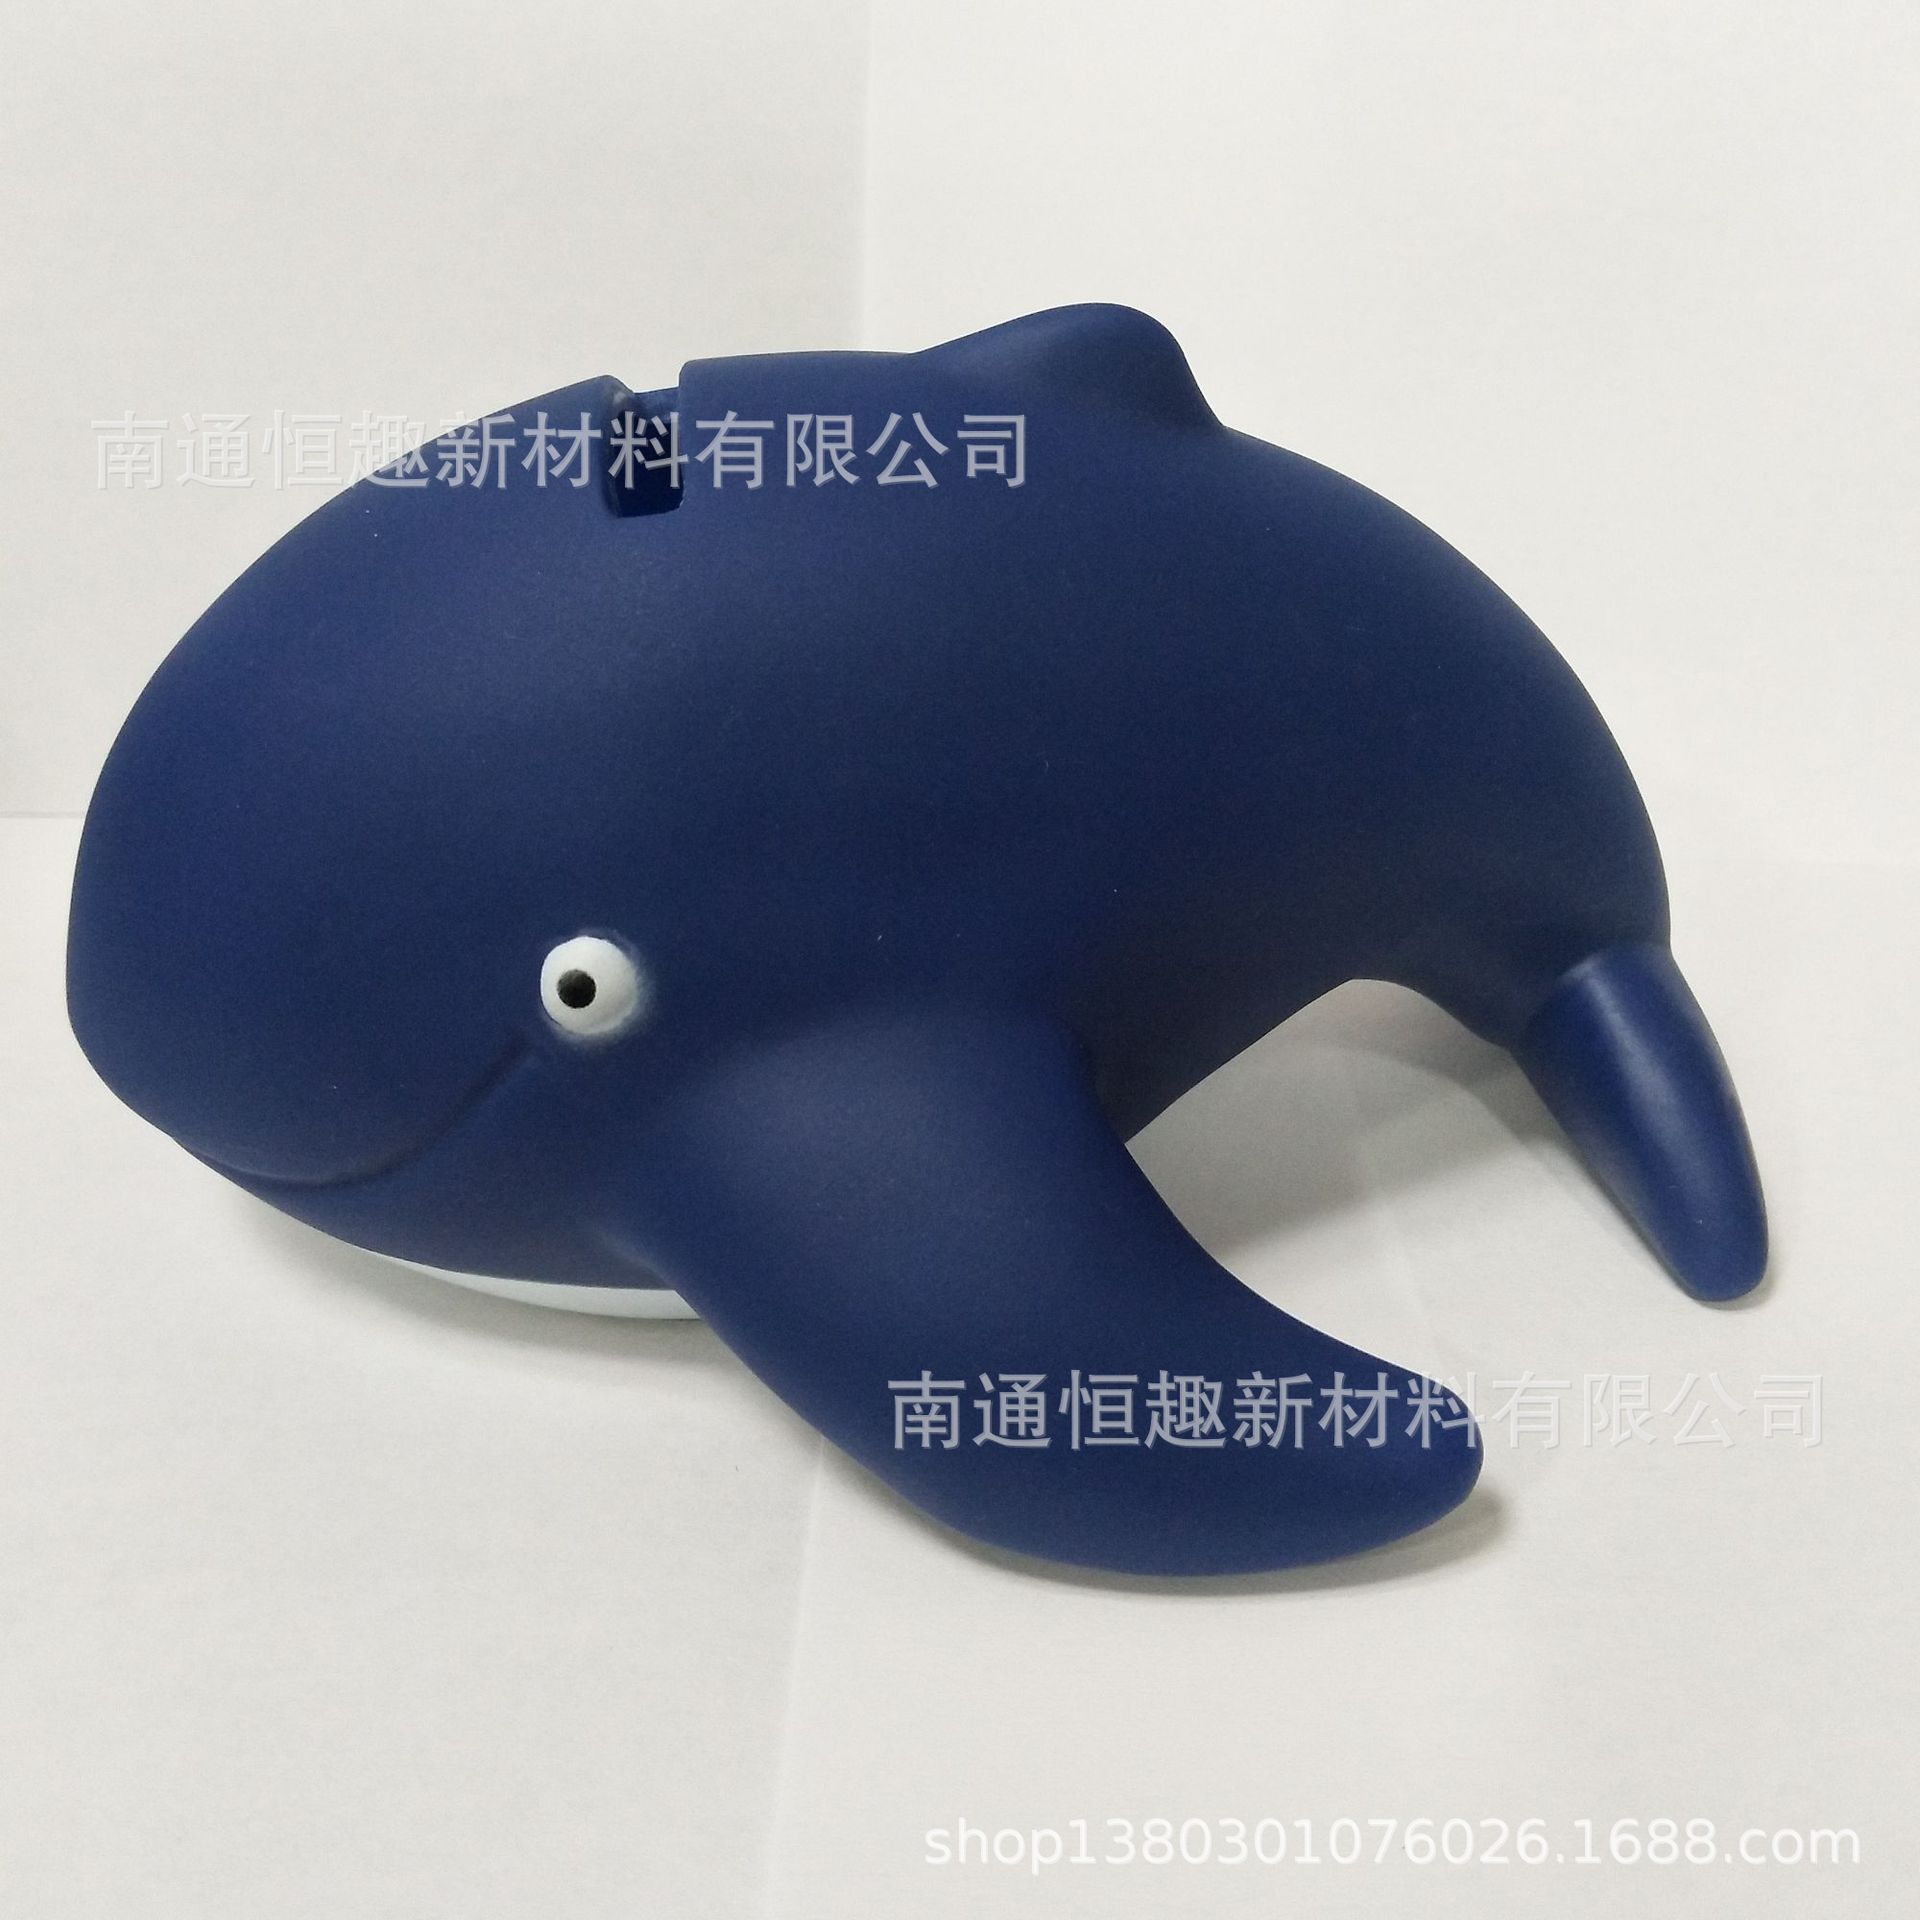 海豚储蓄罐 卡通海洋生物系列存钱罐 搪胶PVC摆件 促销礼品